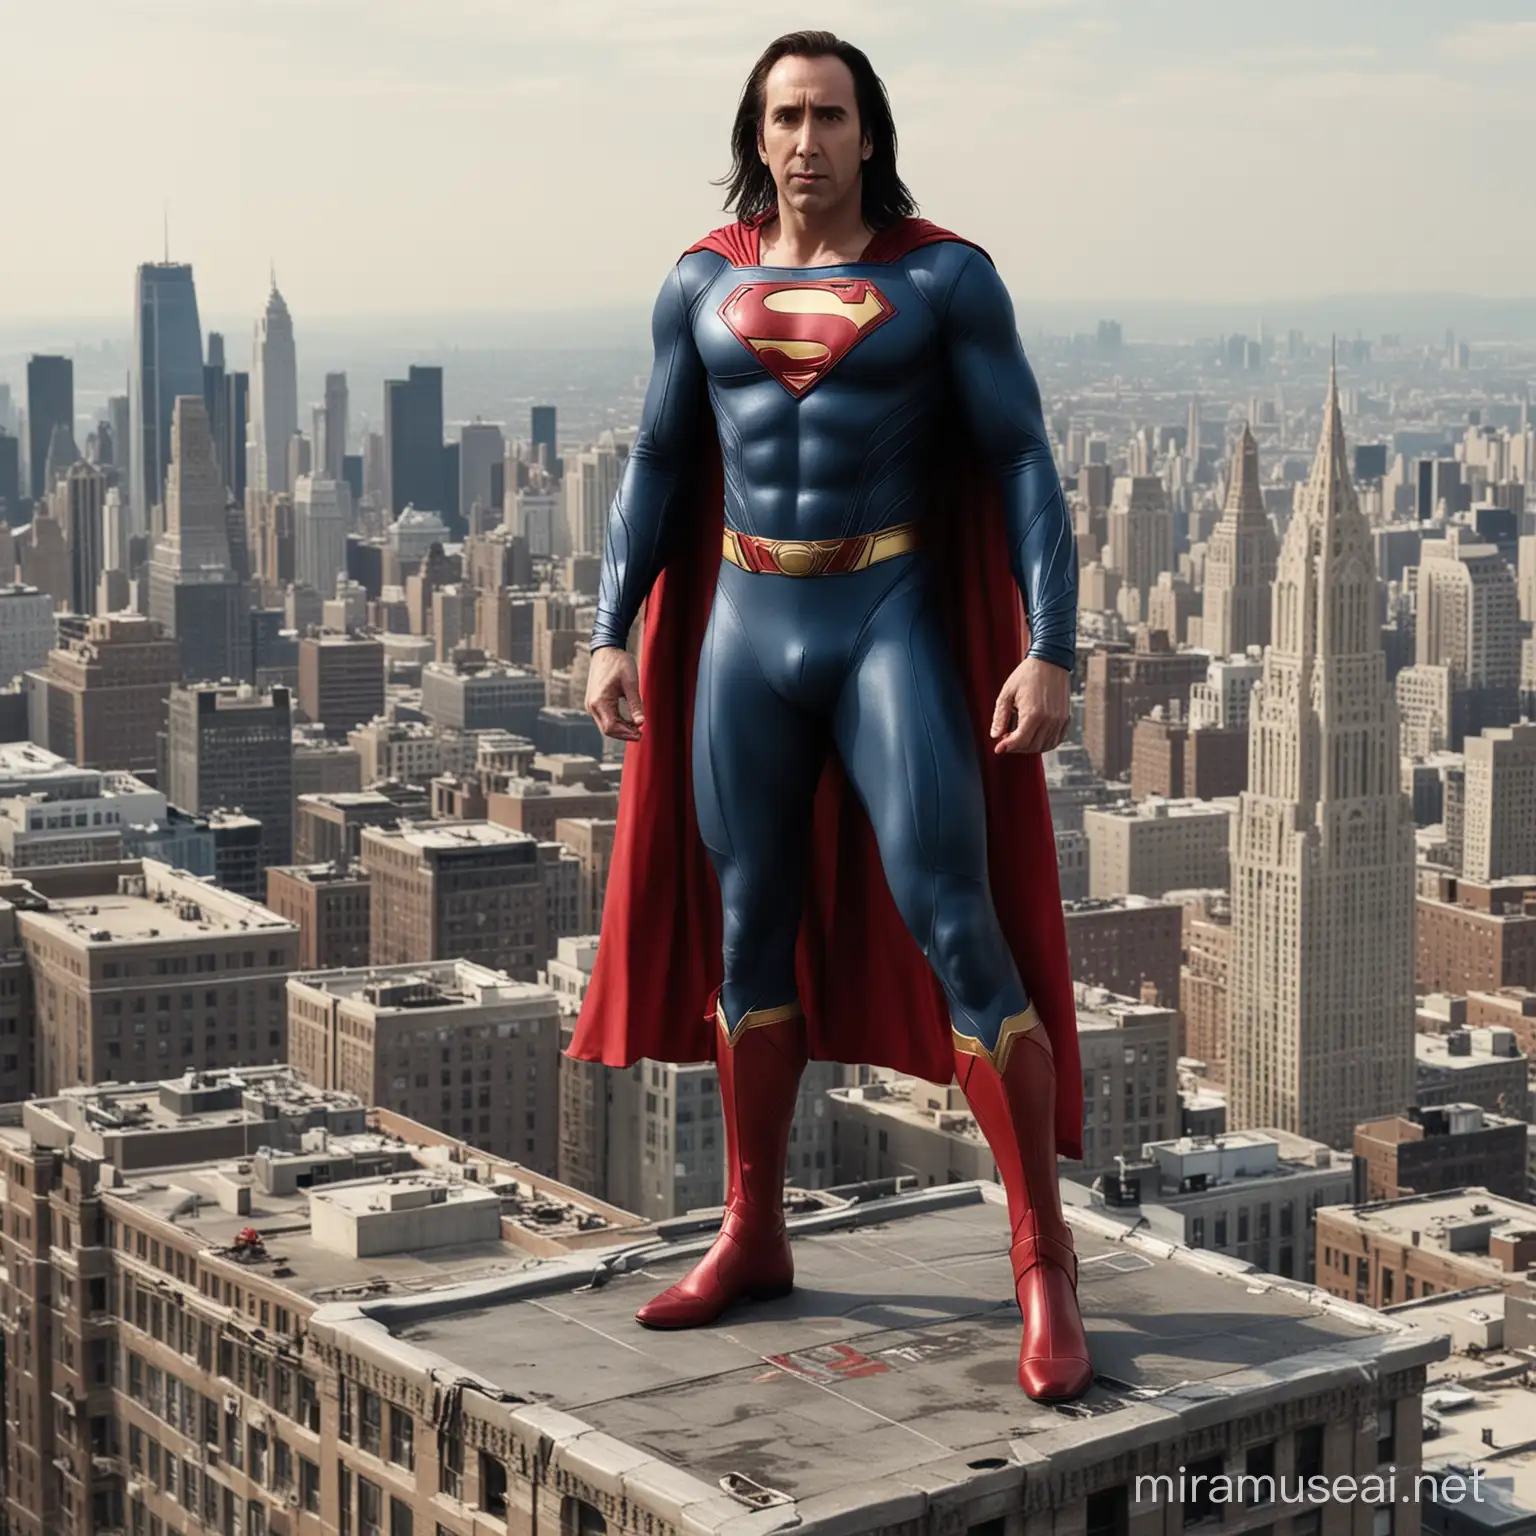 Nicolas Cage as Tim Burtons Superman atop Daily Planet Building